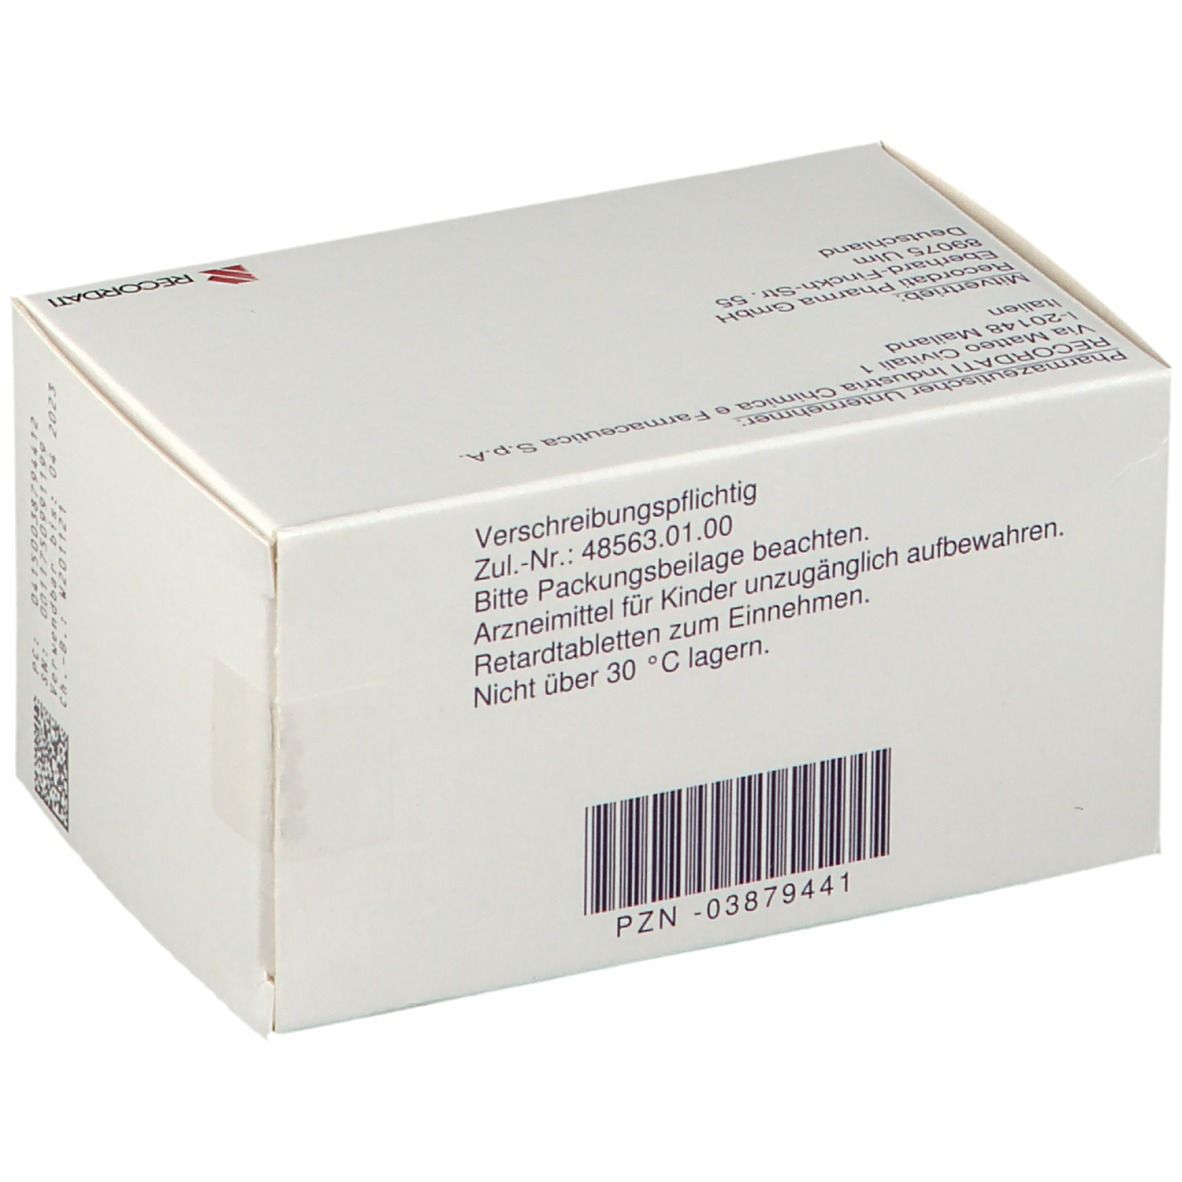 Beloc-Zok® mite 47,5 mg